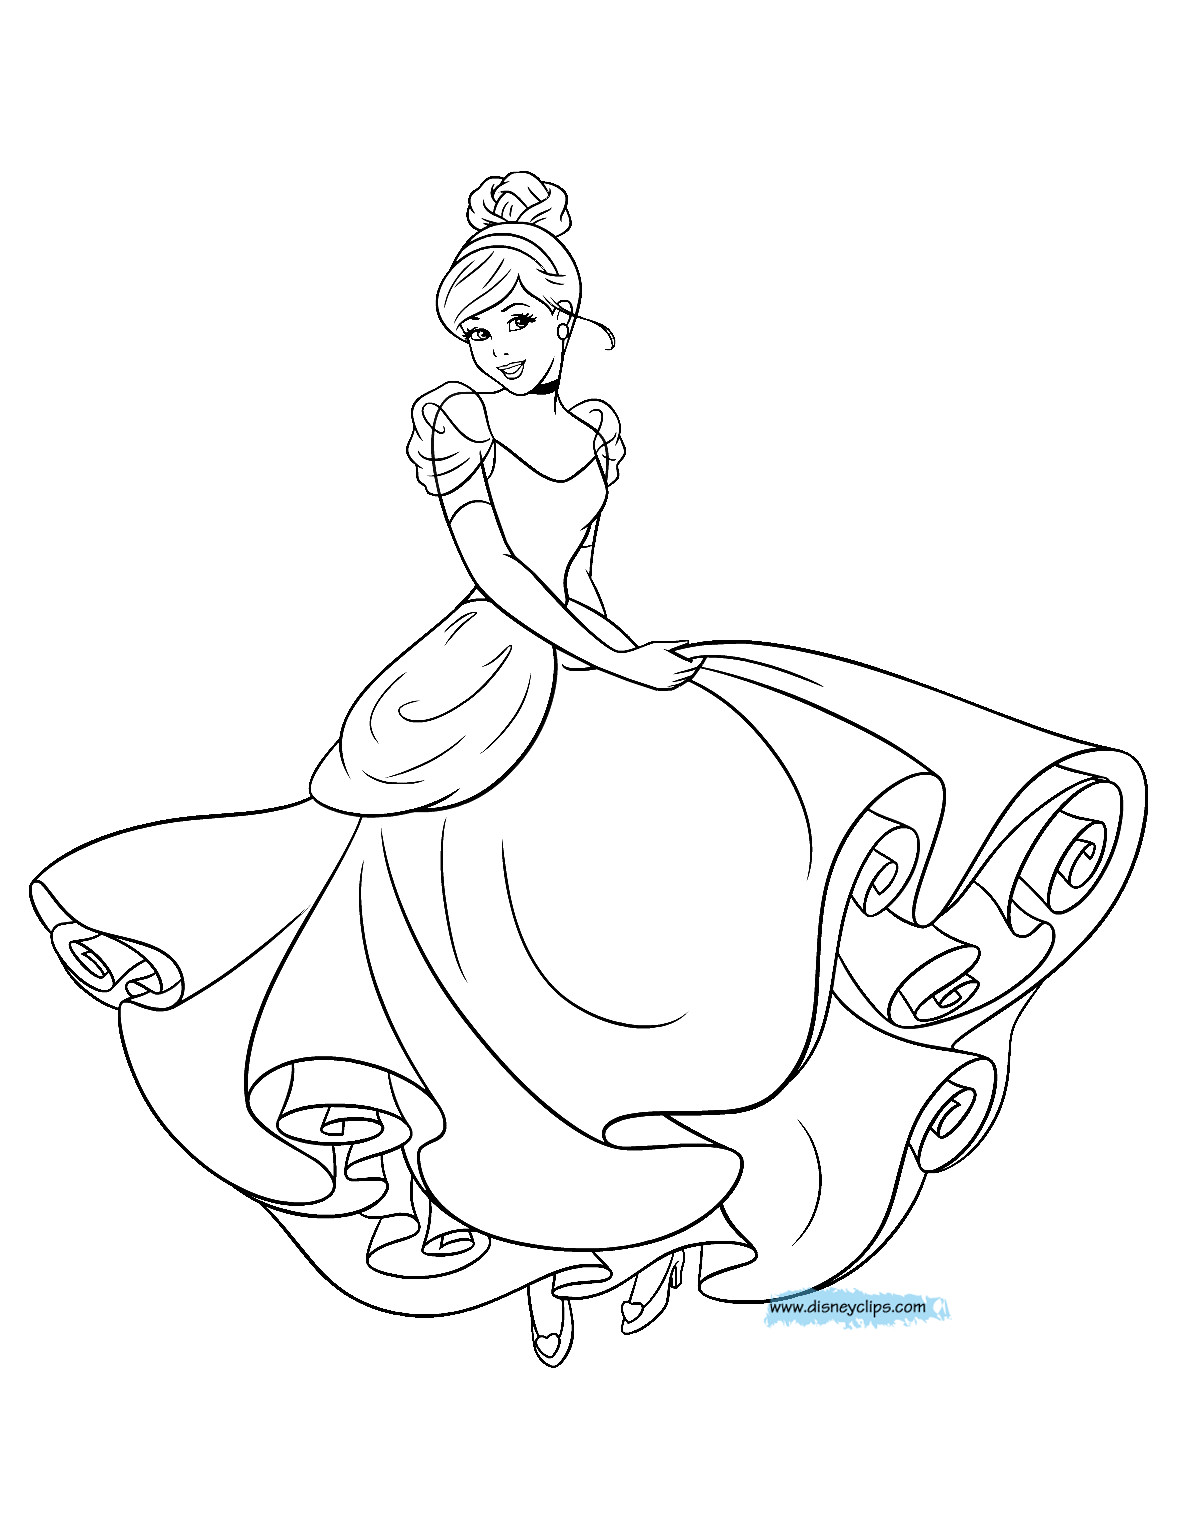 Cinderella Coloring Sheet
 Disney s Cinderella Coloring Pages